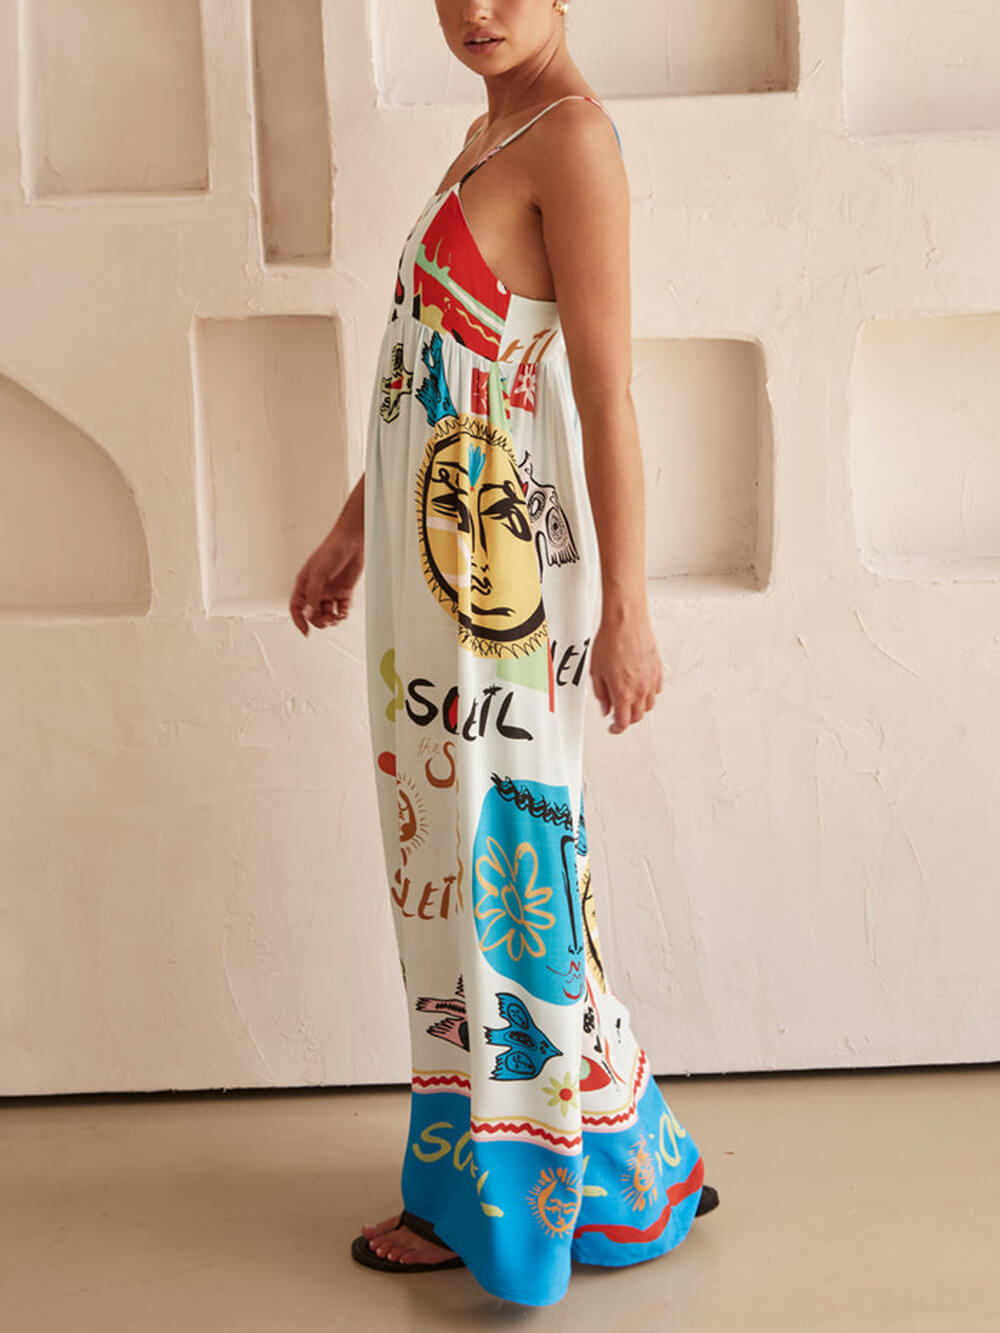 परिष्कृत सनसनी साटन अद्वितीय प्रिंट मैक्सी ड्रेस